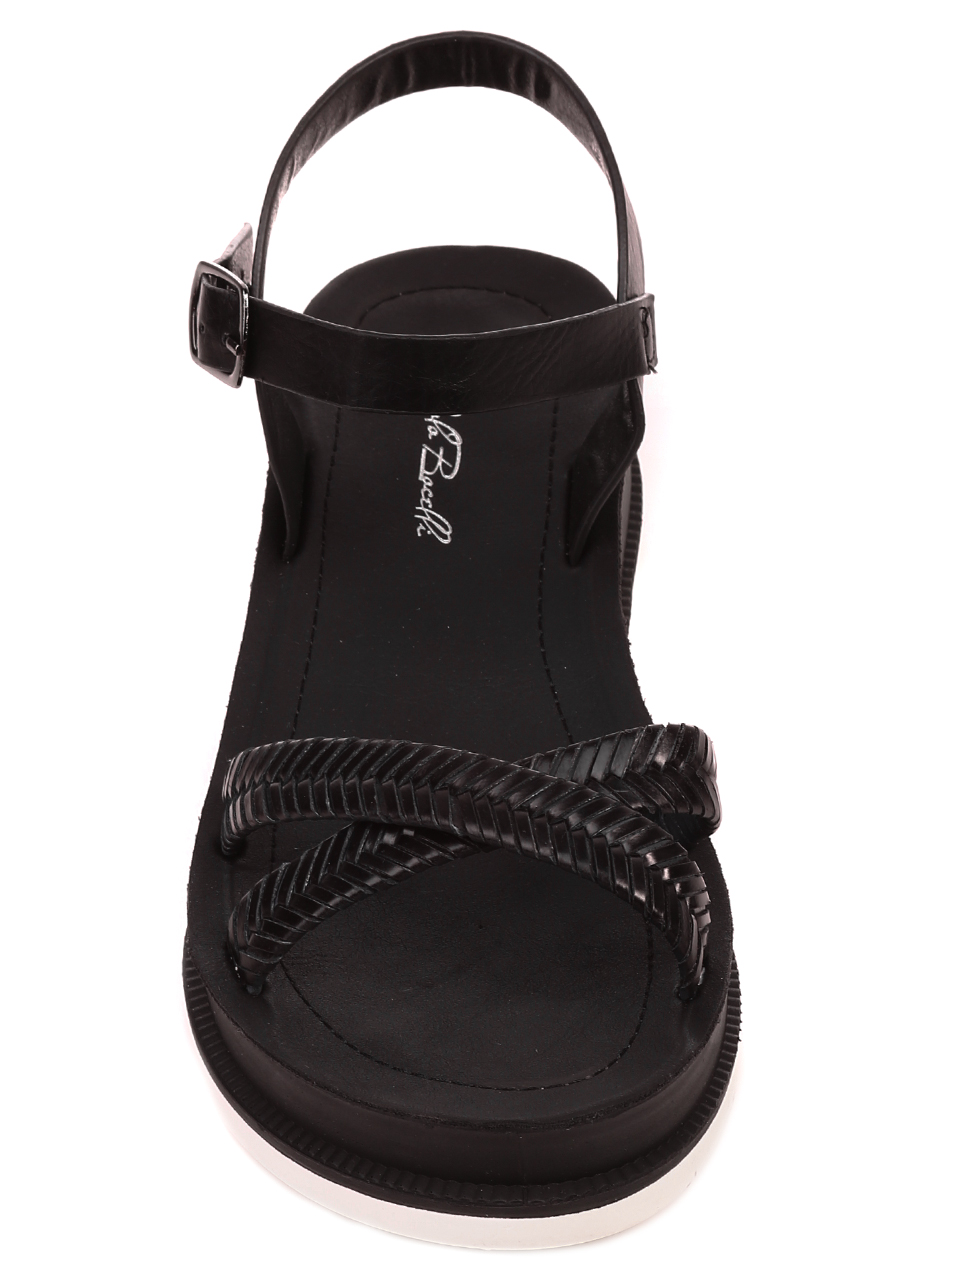 Ежедневни дамски сандали на платформа в черно 4F-21207 black